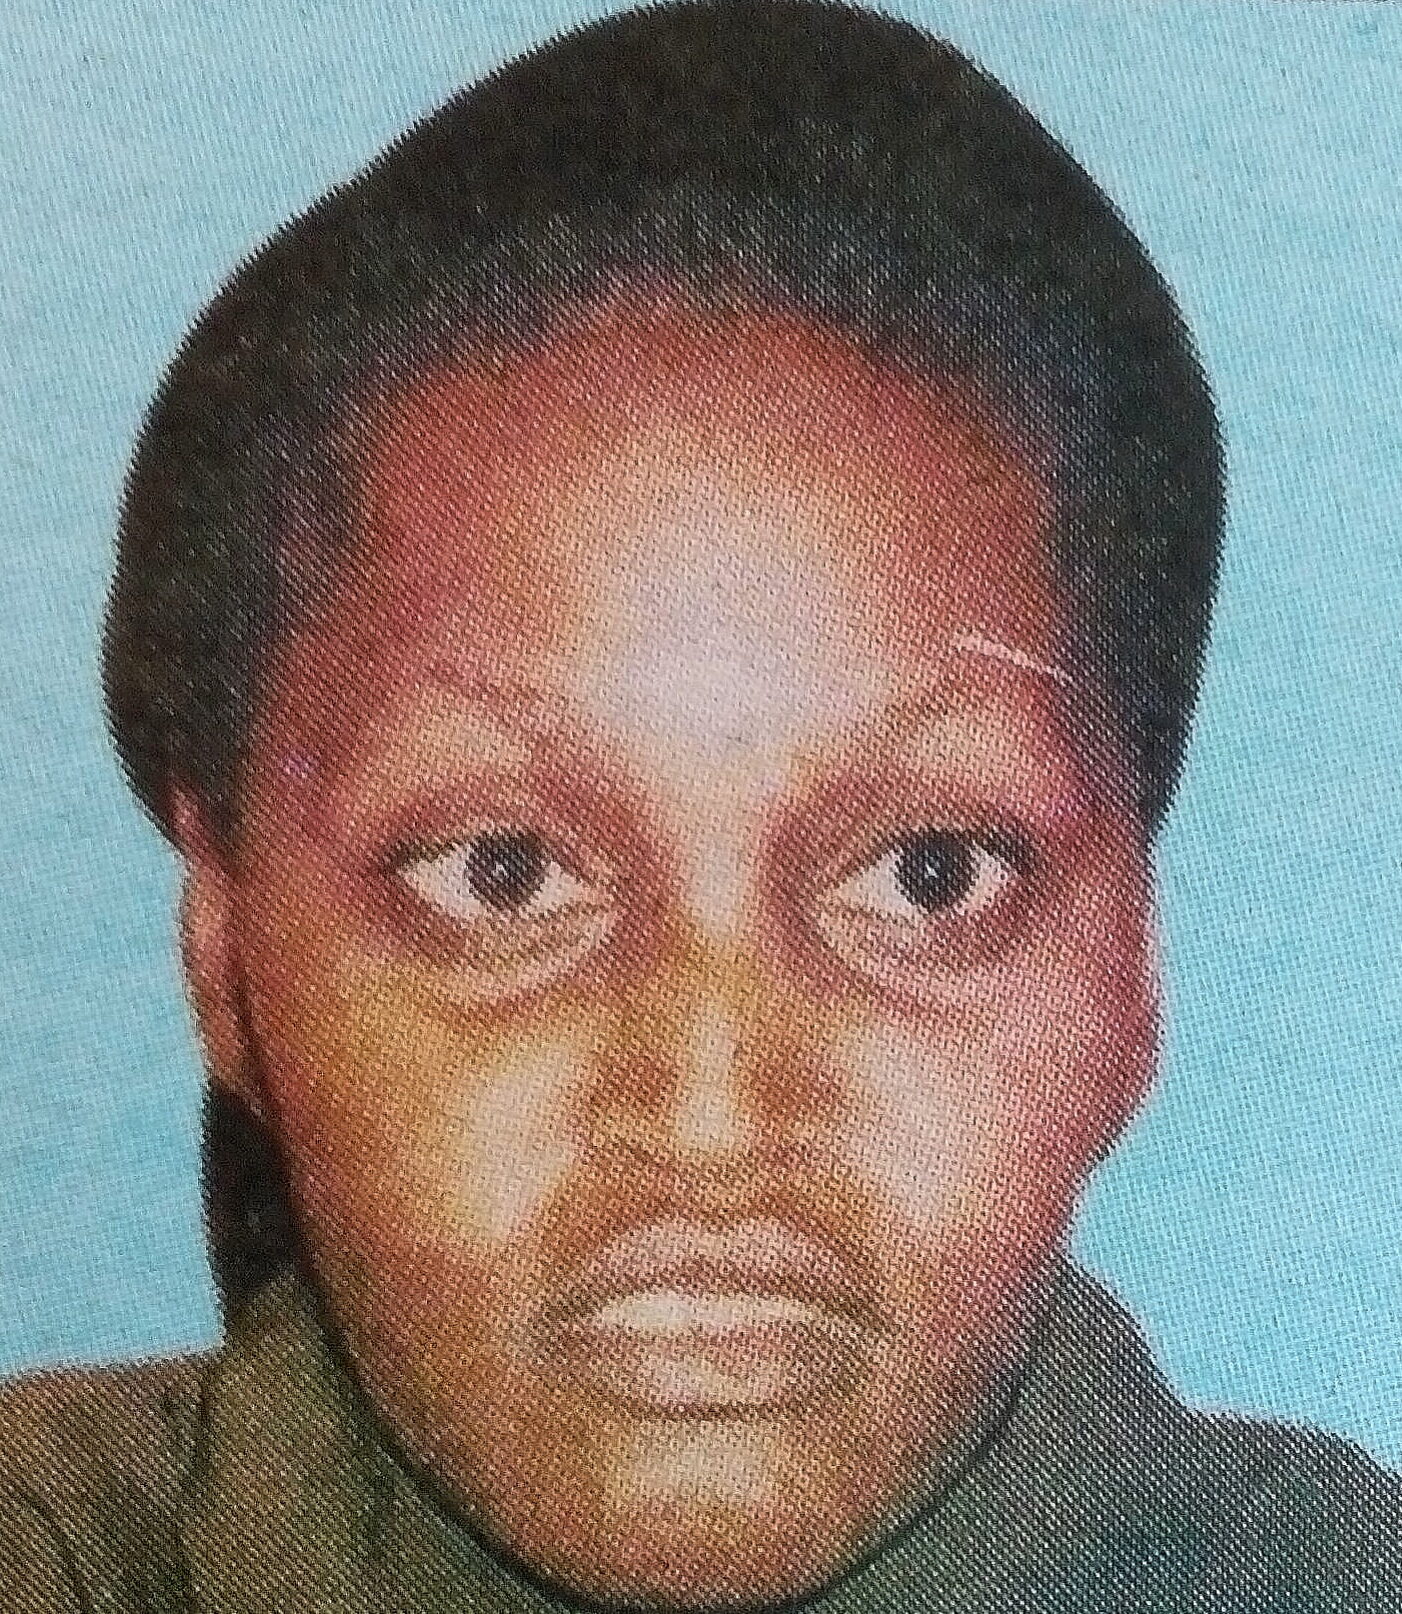 Obituary Image of Flora Wanjiru Muchiri